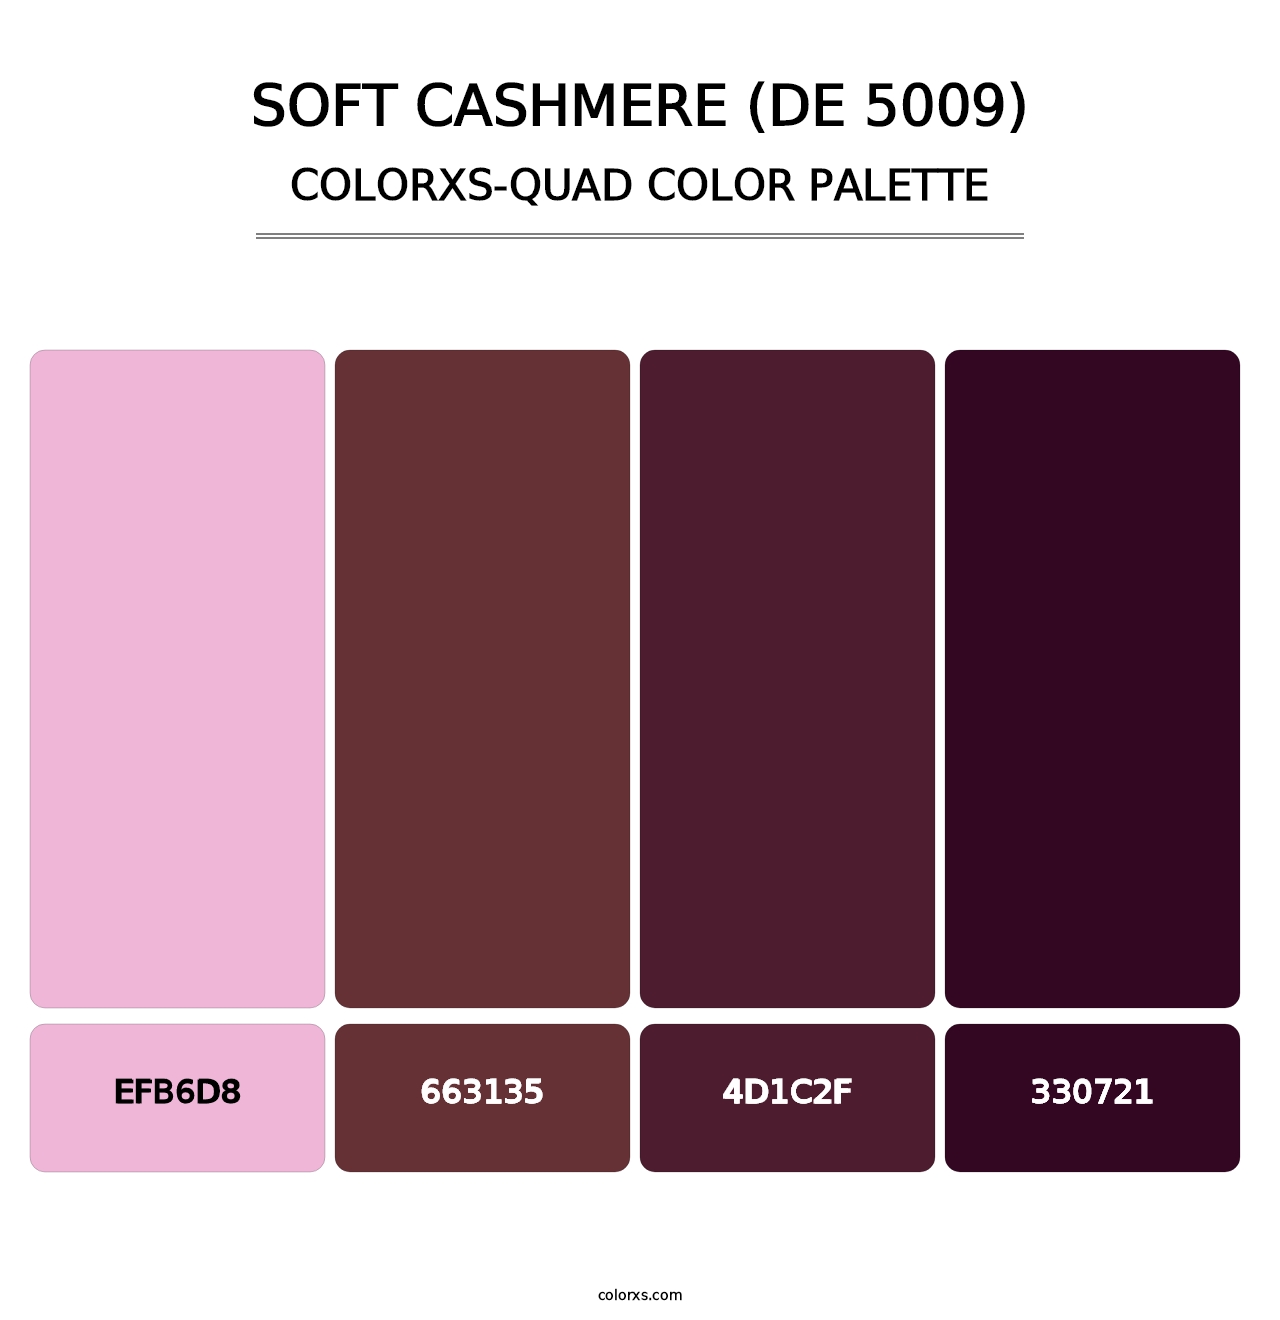 Soft Cashmere (DE 5009) - Colorxs Quad Palette